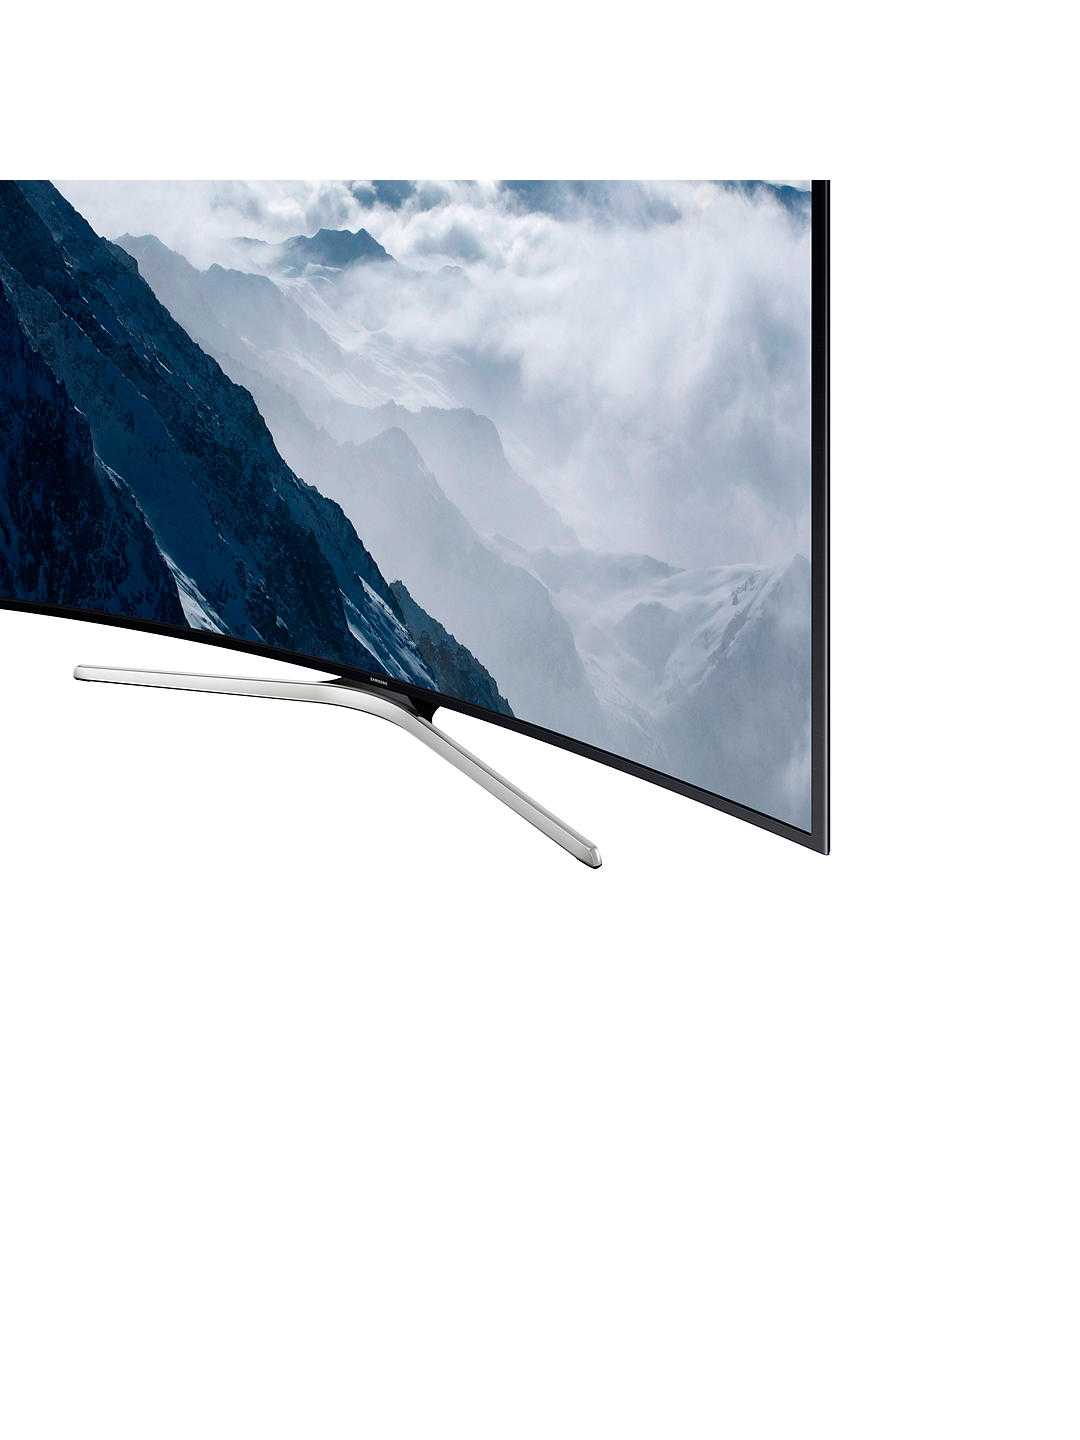 Телевизор samsung ue55f6650ab - купить | цены | обзоры и тесты | отзывы | параметры и характеристики | инструкция